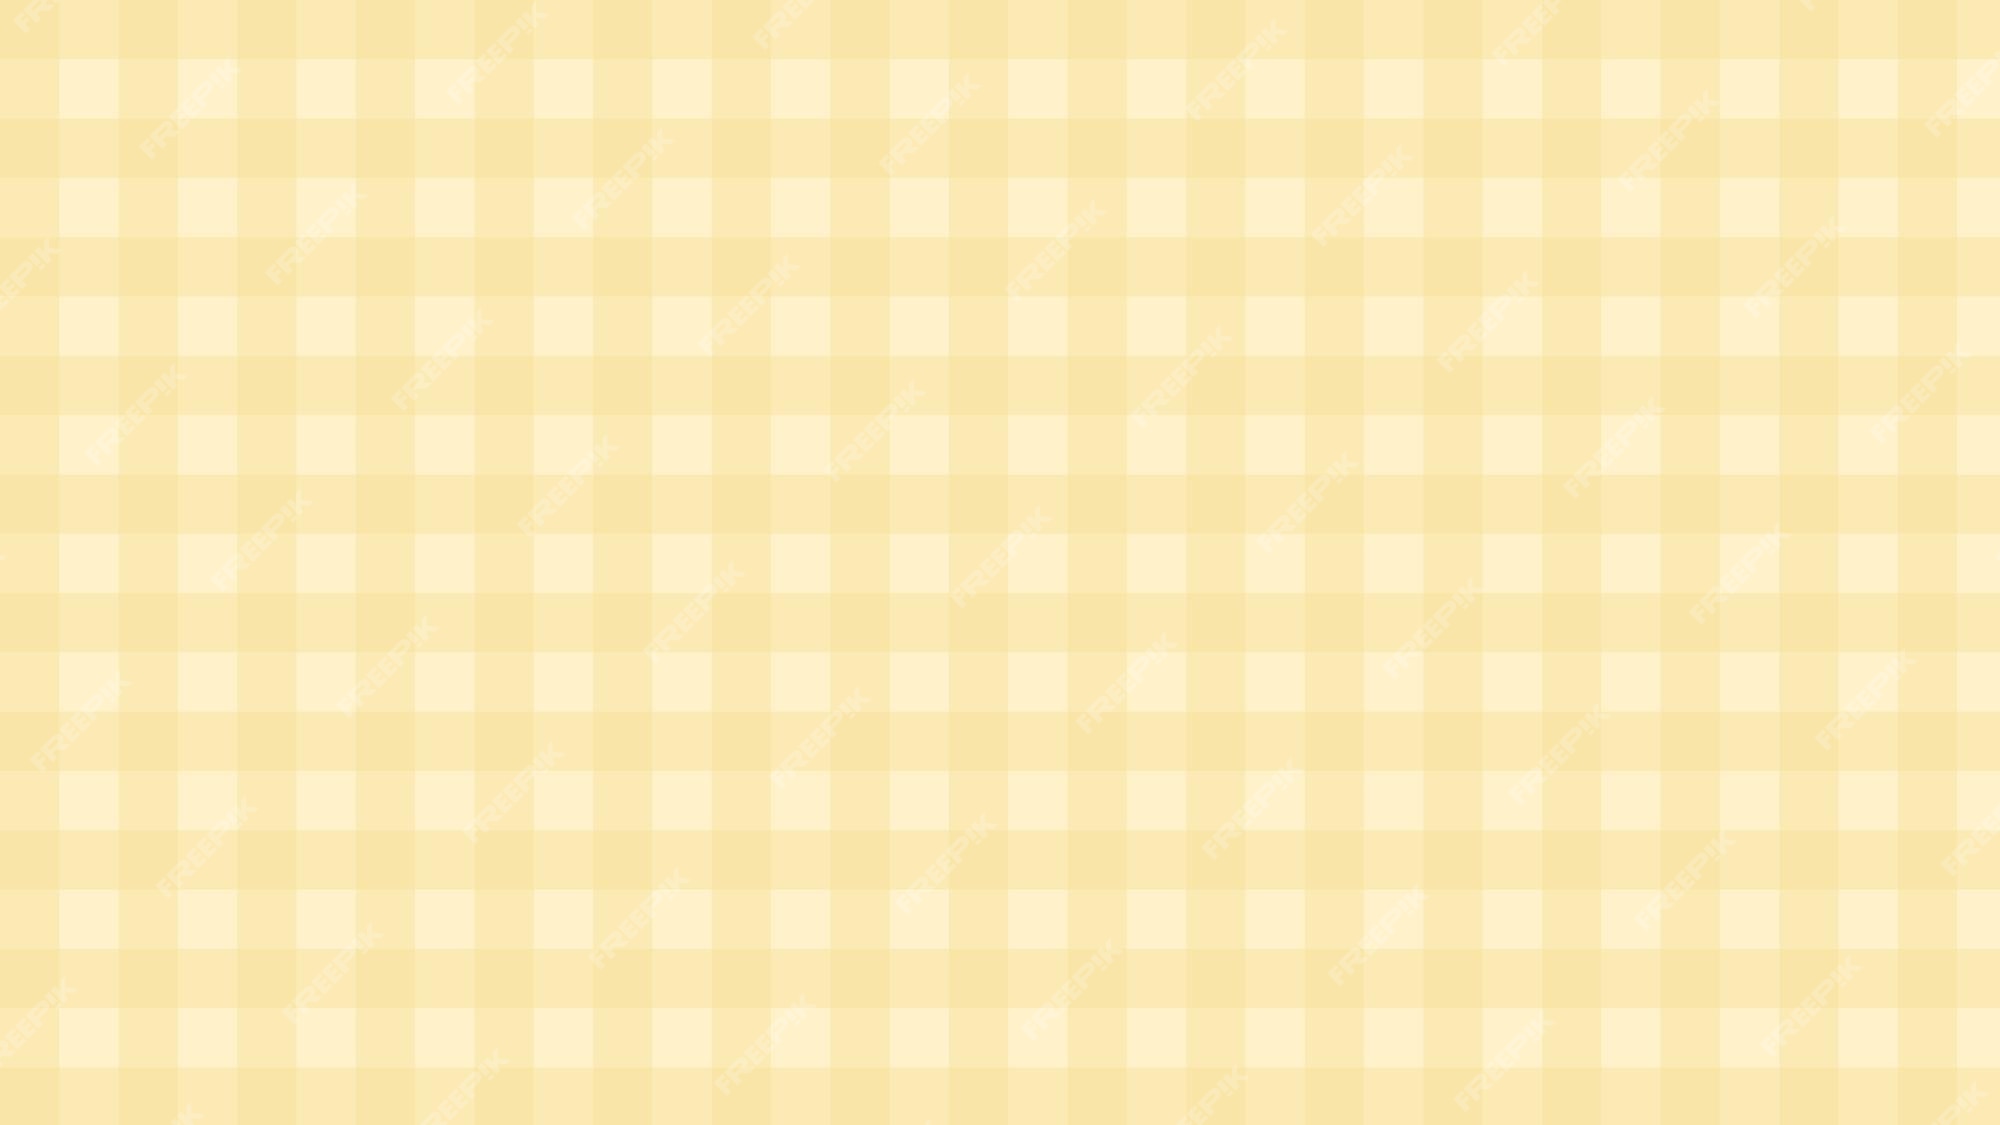 Với sự kết hợp kinh điển của màu vàng và họa tiết checkers, hình ảnh này sẽ giúp bạn tìm thấy nguồn cảm hứng và bổ sung thêm màu sắc cho không gian nhà của bạn. Điều này rất phù hợp khi bạn muốn thêm một chút sự tươi sáng và năng động vào khu vực thông thường của gia đình mình.